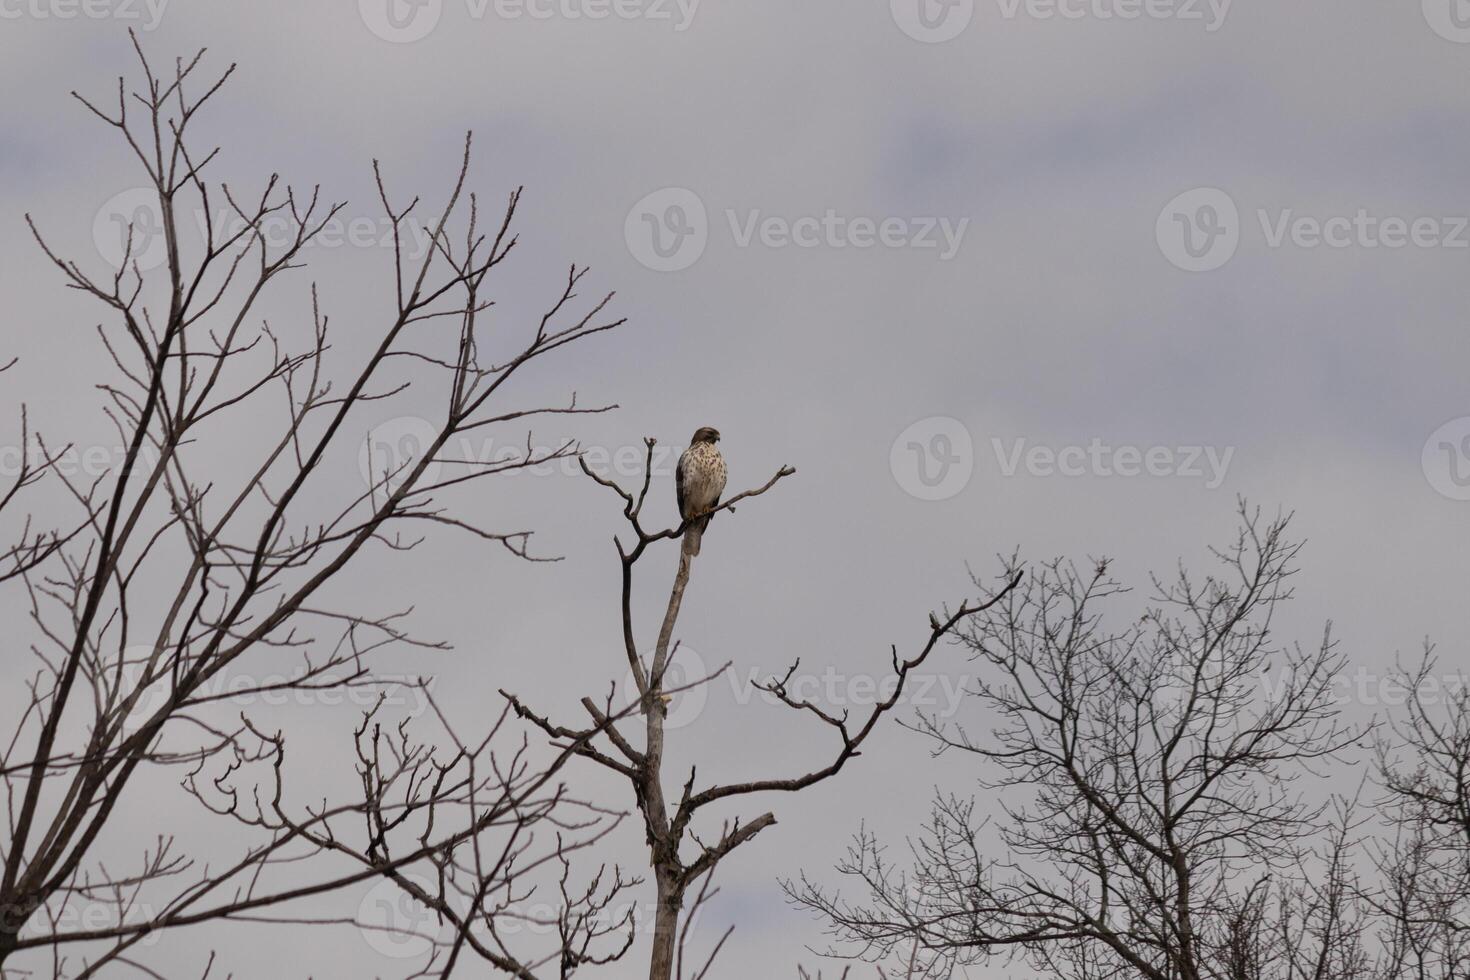 diese rot Schwanz Falke war thront beim das oben von das Baum suchen zum Brey. seine schön Weiß Bauch Stehen aus von das Geäst von das Baum. seine wenig braun Kopf und Körper Umrisse seine Körper. foto